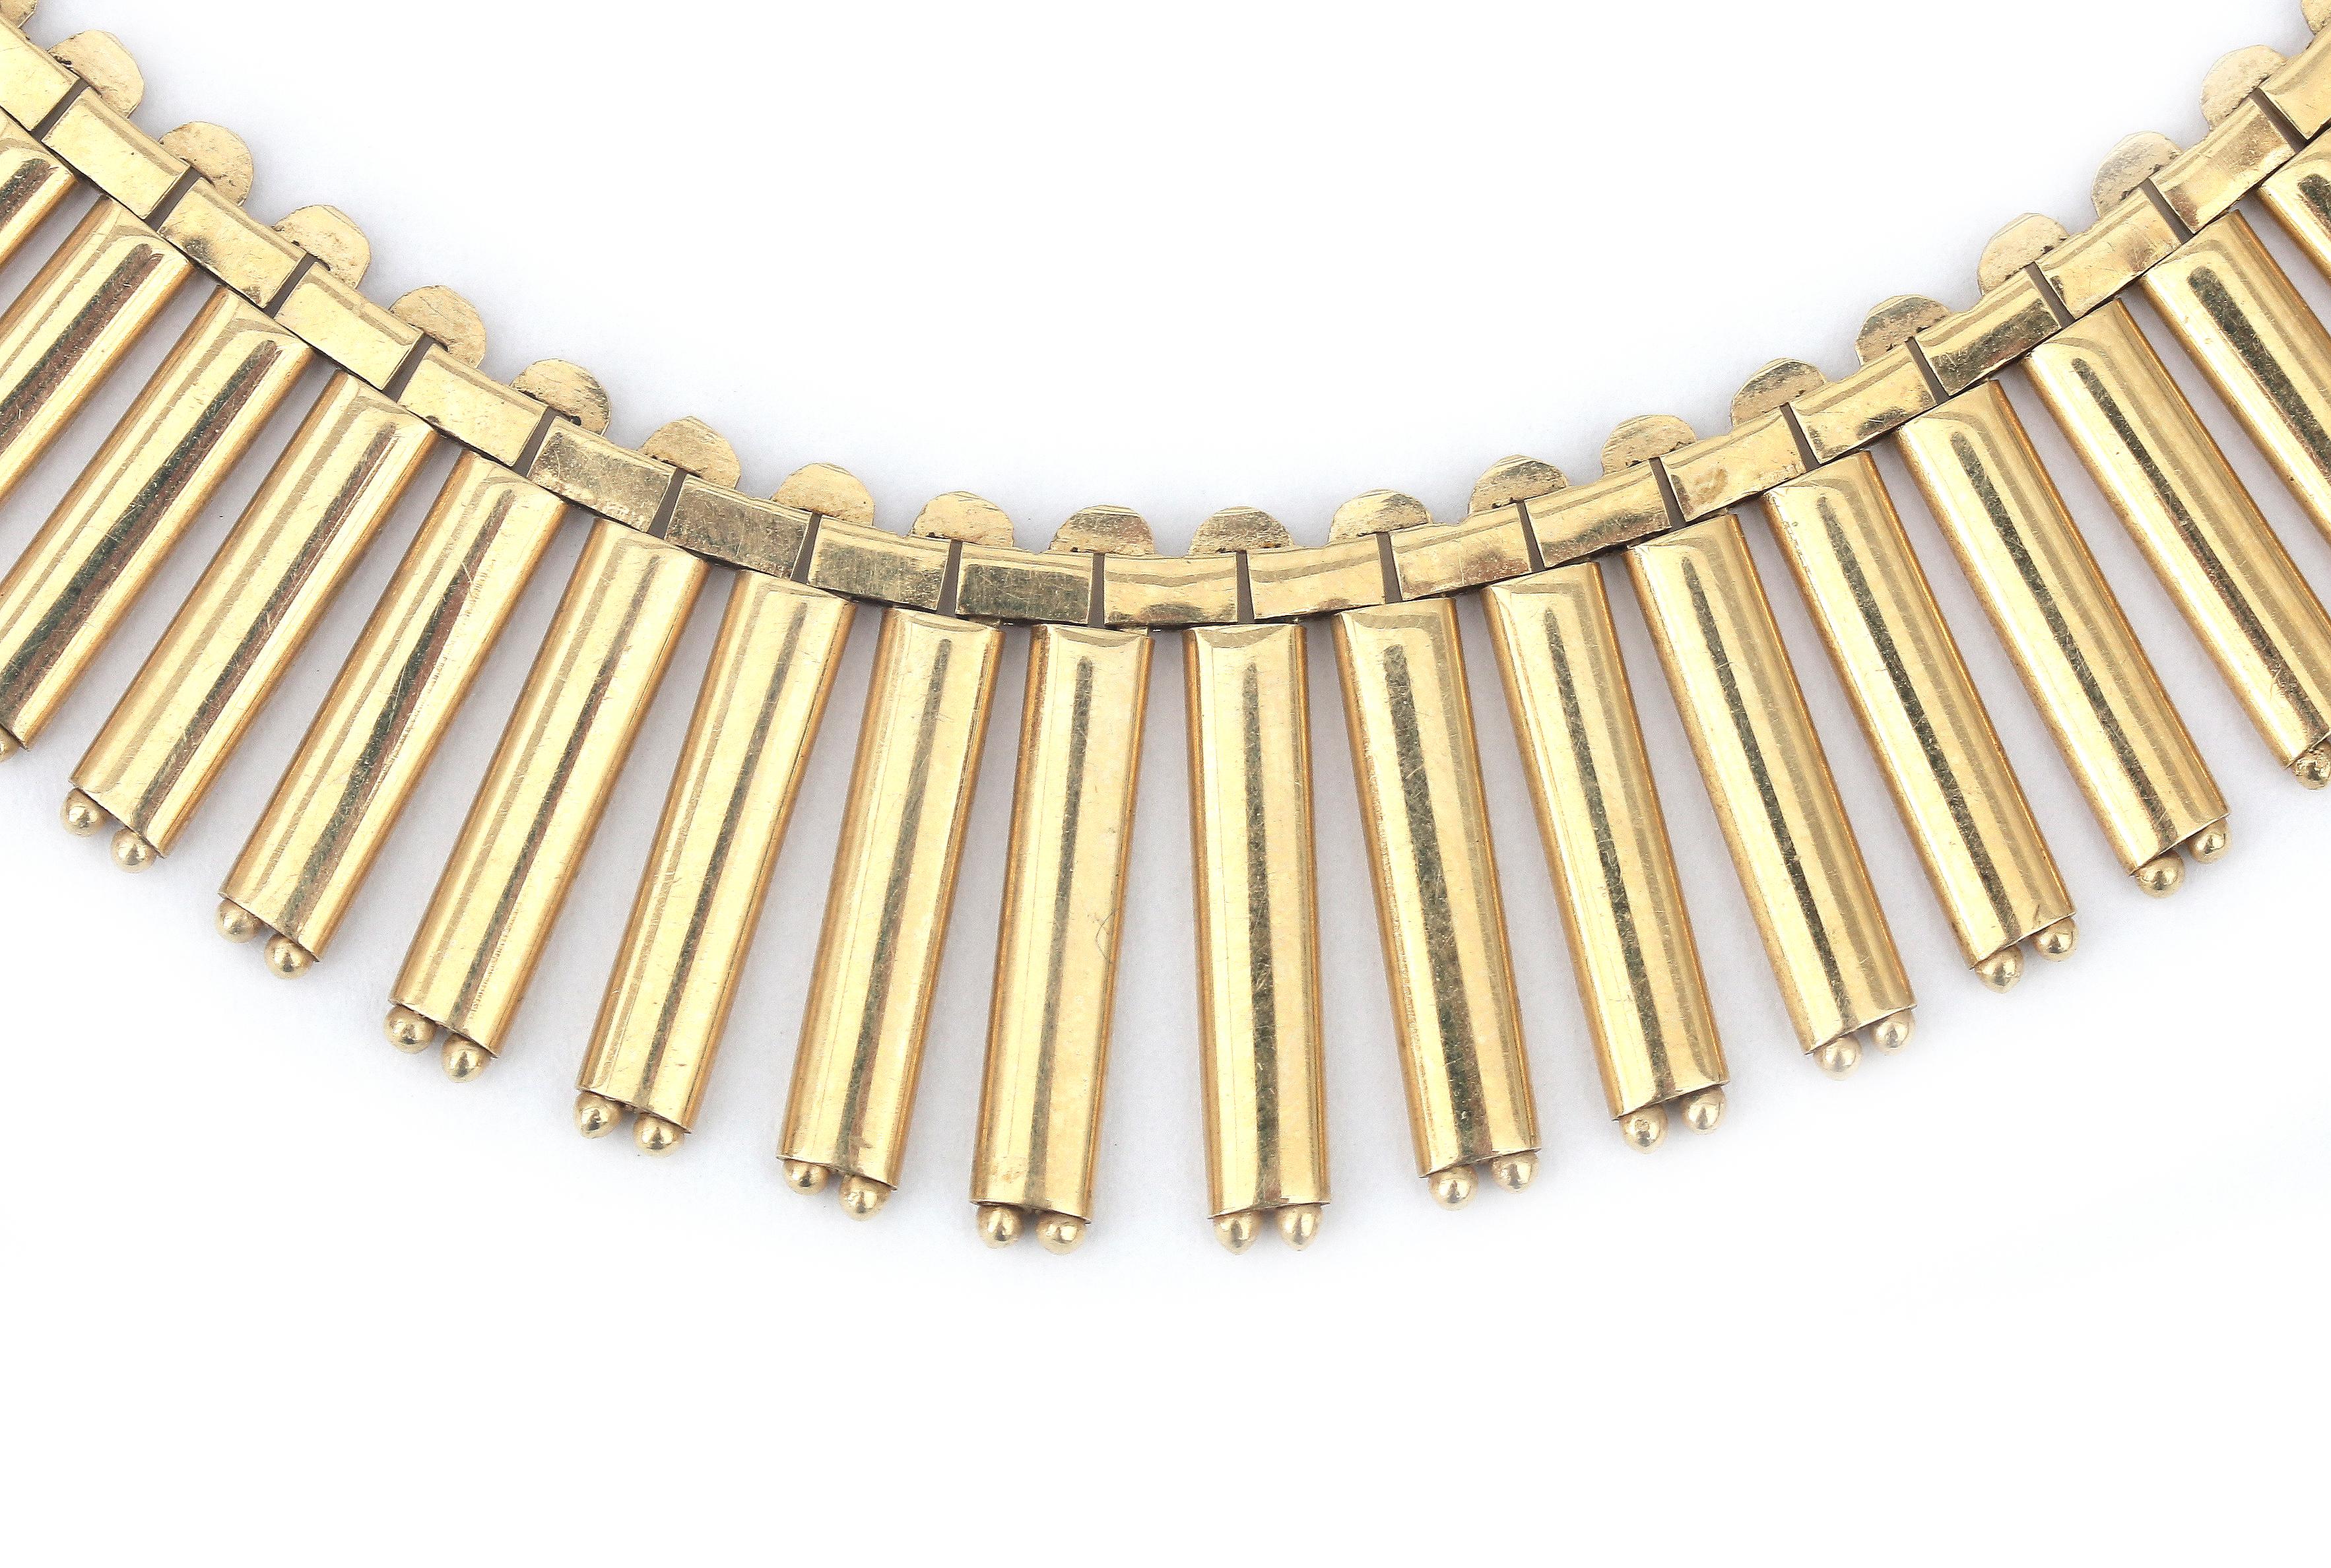 A 14 karat gold fringe necklace - Image 2 of 2